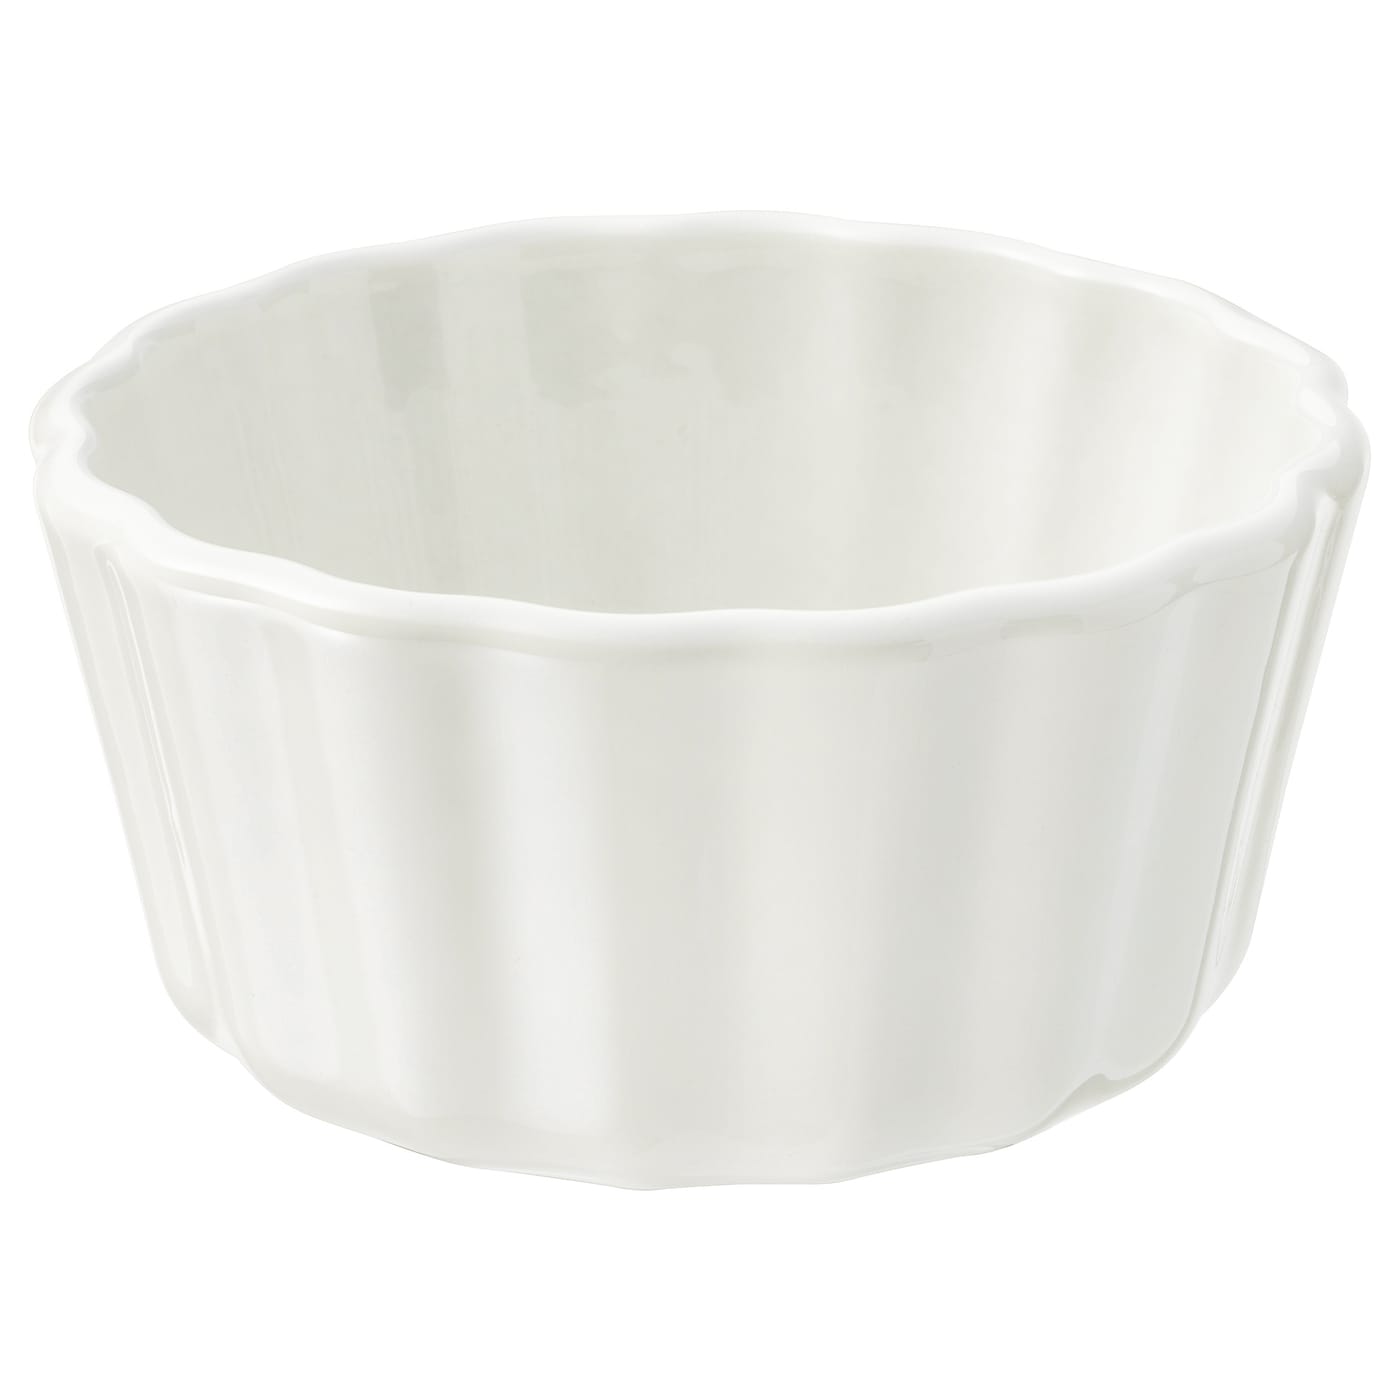 VARDAGEN ВАРДАГЕН Форма для открытого пирога, белый с оттенком, 11 см IKEA форма для выпечки ikea vardagen 38x29 серебристый